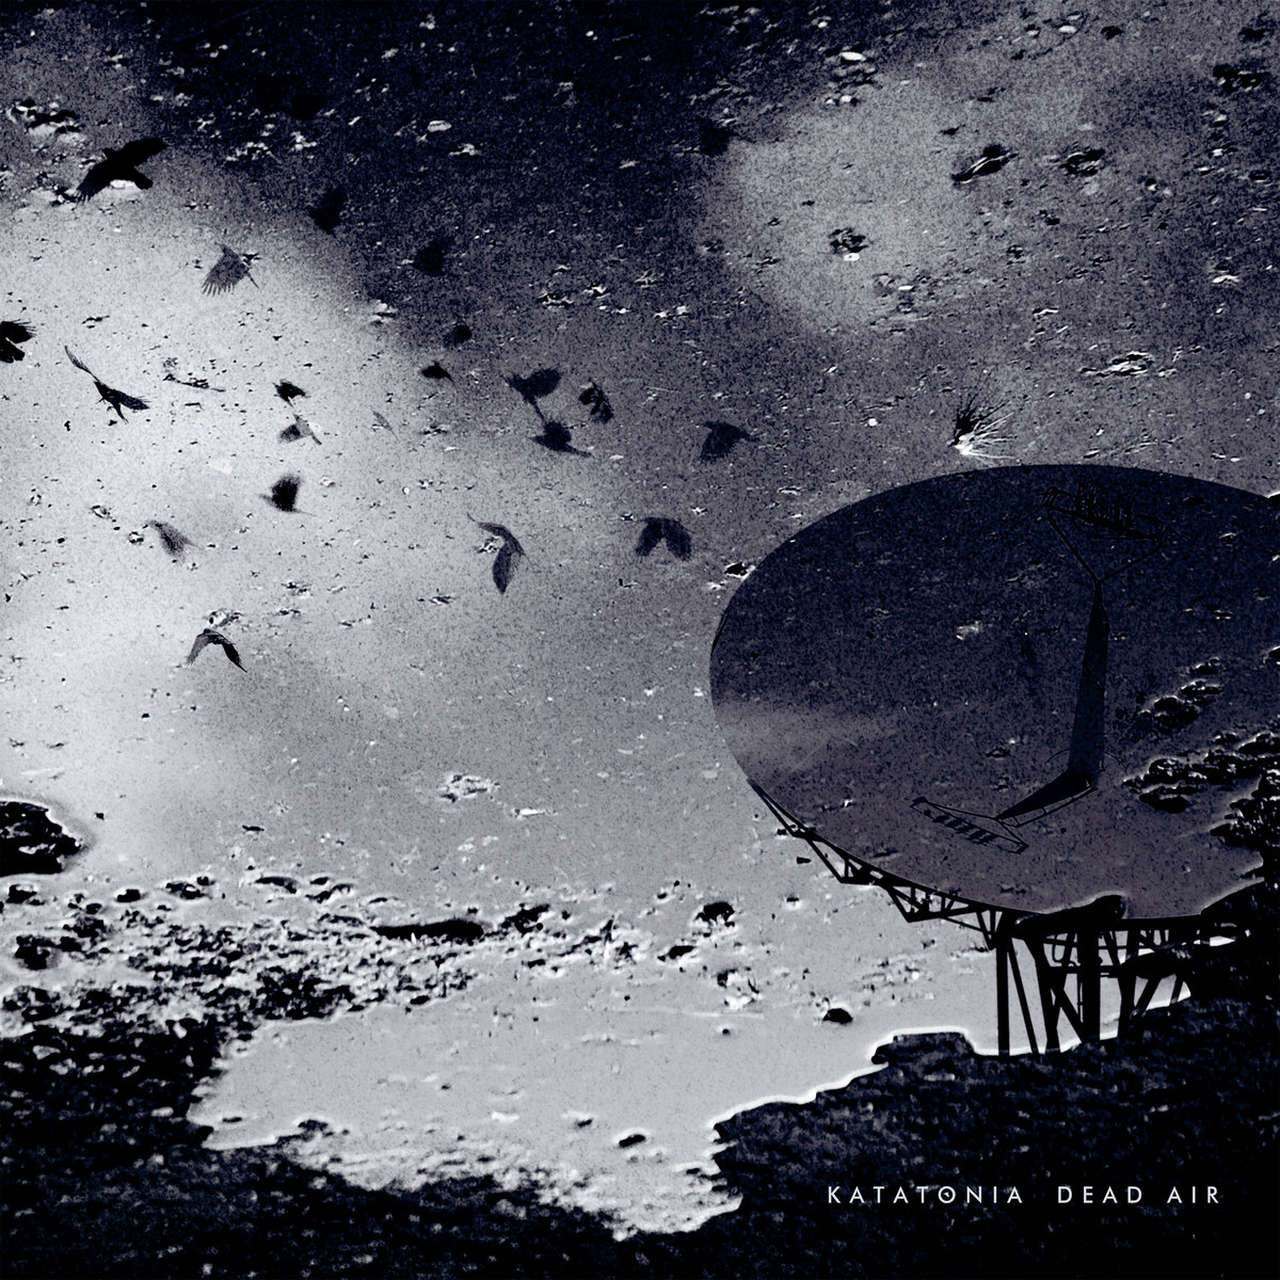 Katatonia - Dead Air (Digipak 2CD + DVD)